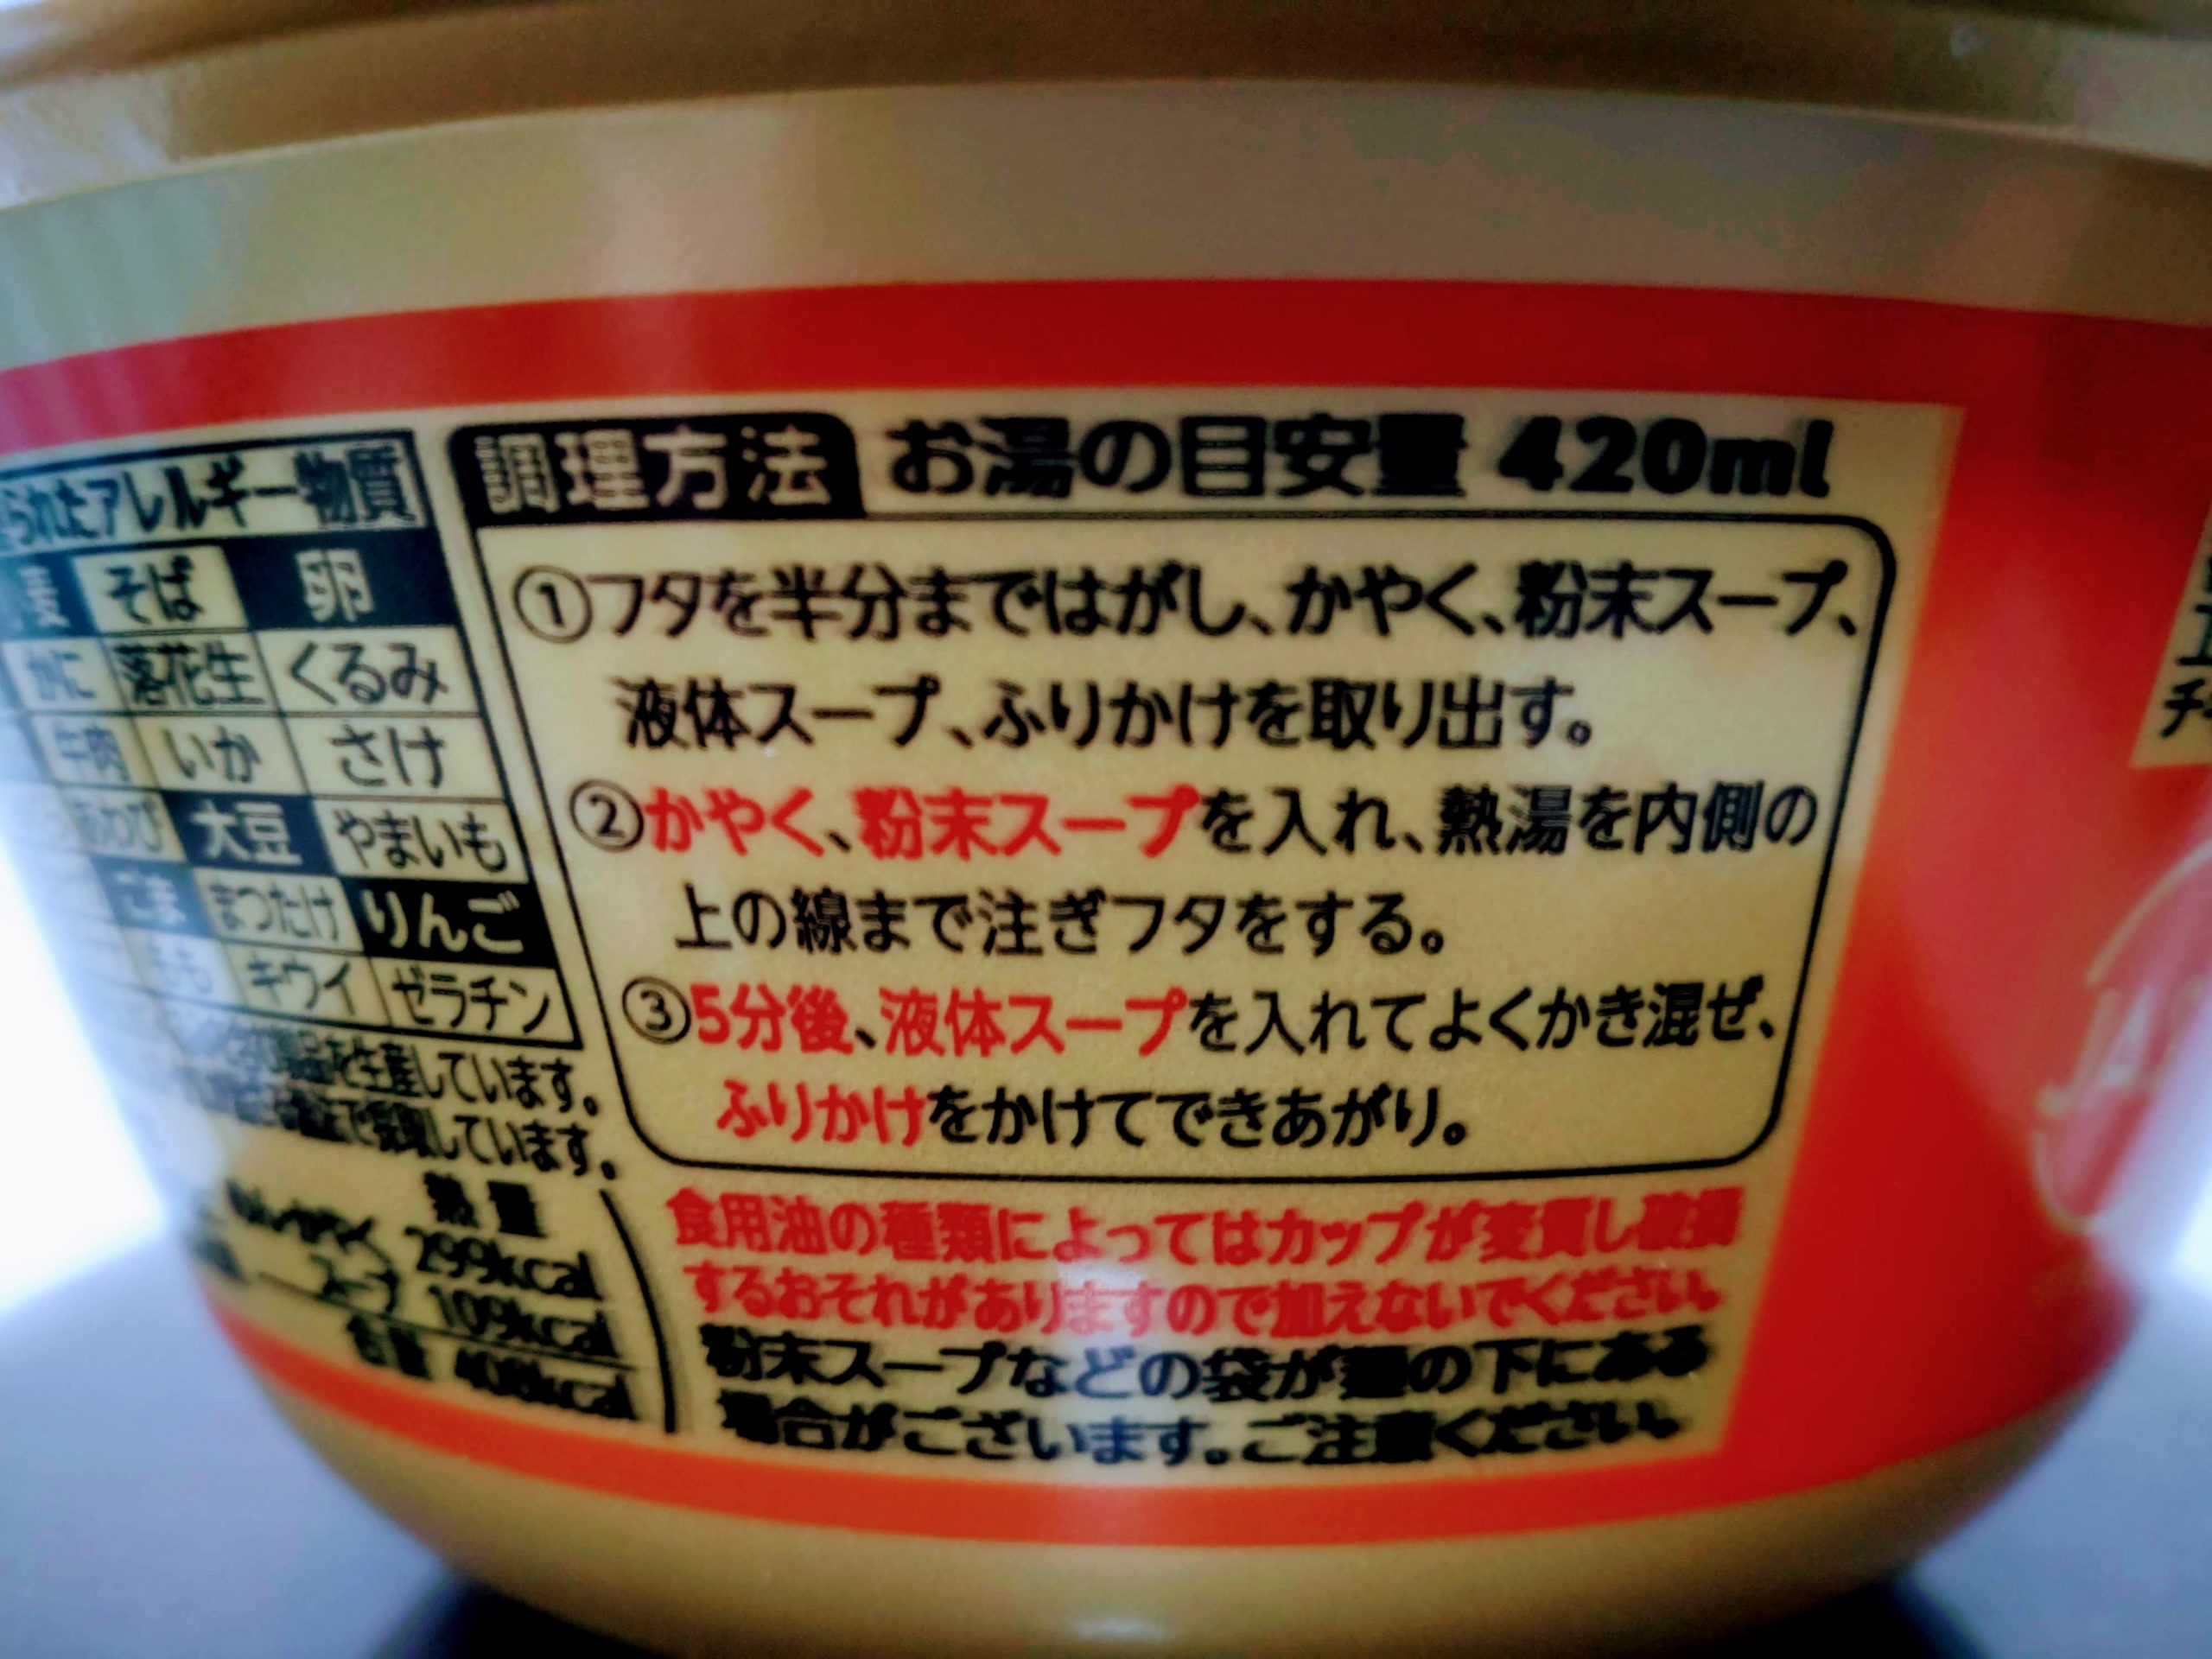 地域の名店 酒麺亭潤 燕三条系醤油ラーメンの調理方法